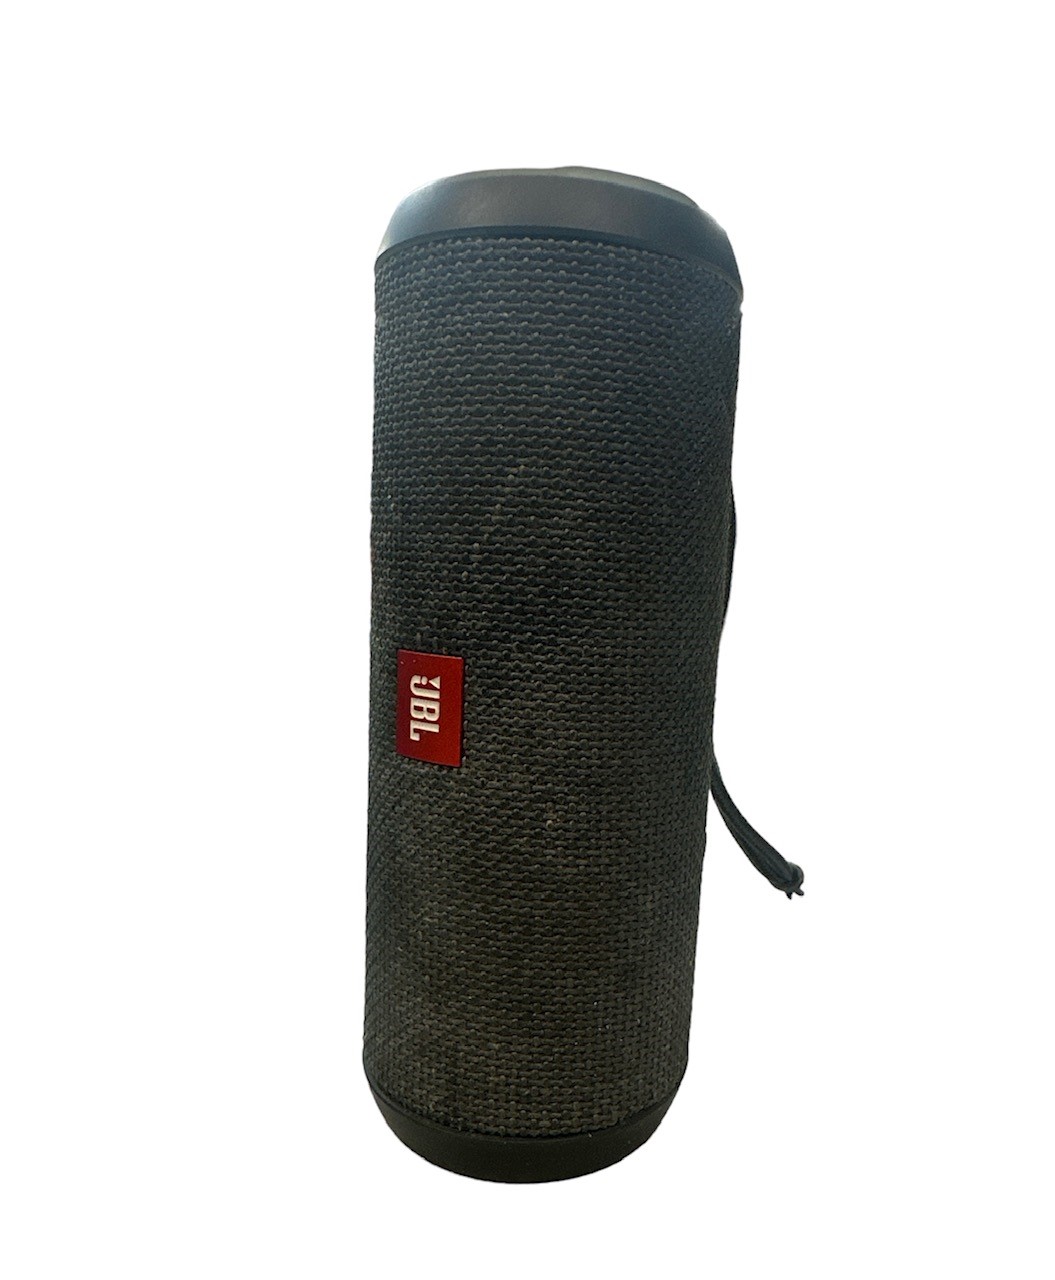 JBL Flip Essential Bluetooth Speaker - B - Black